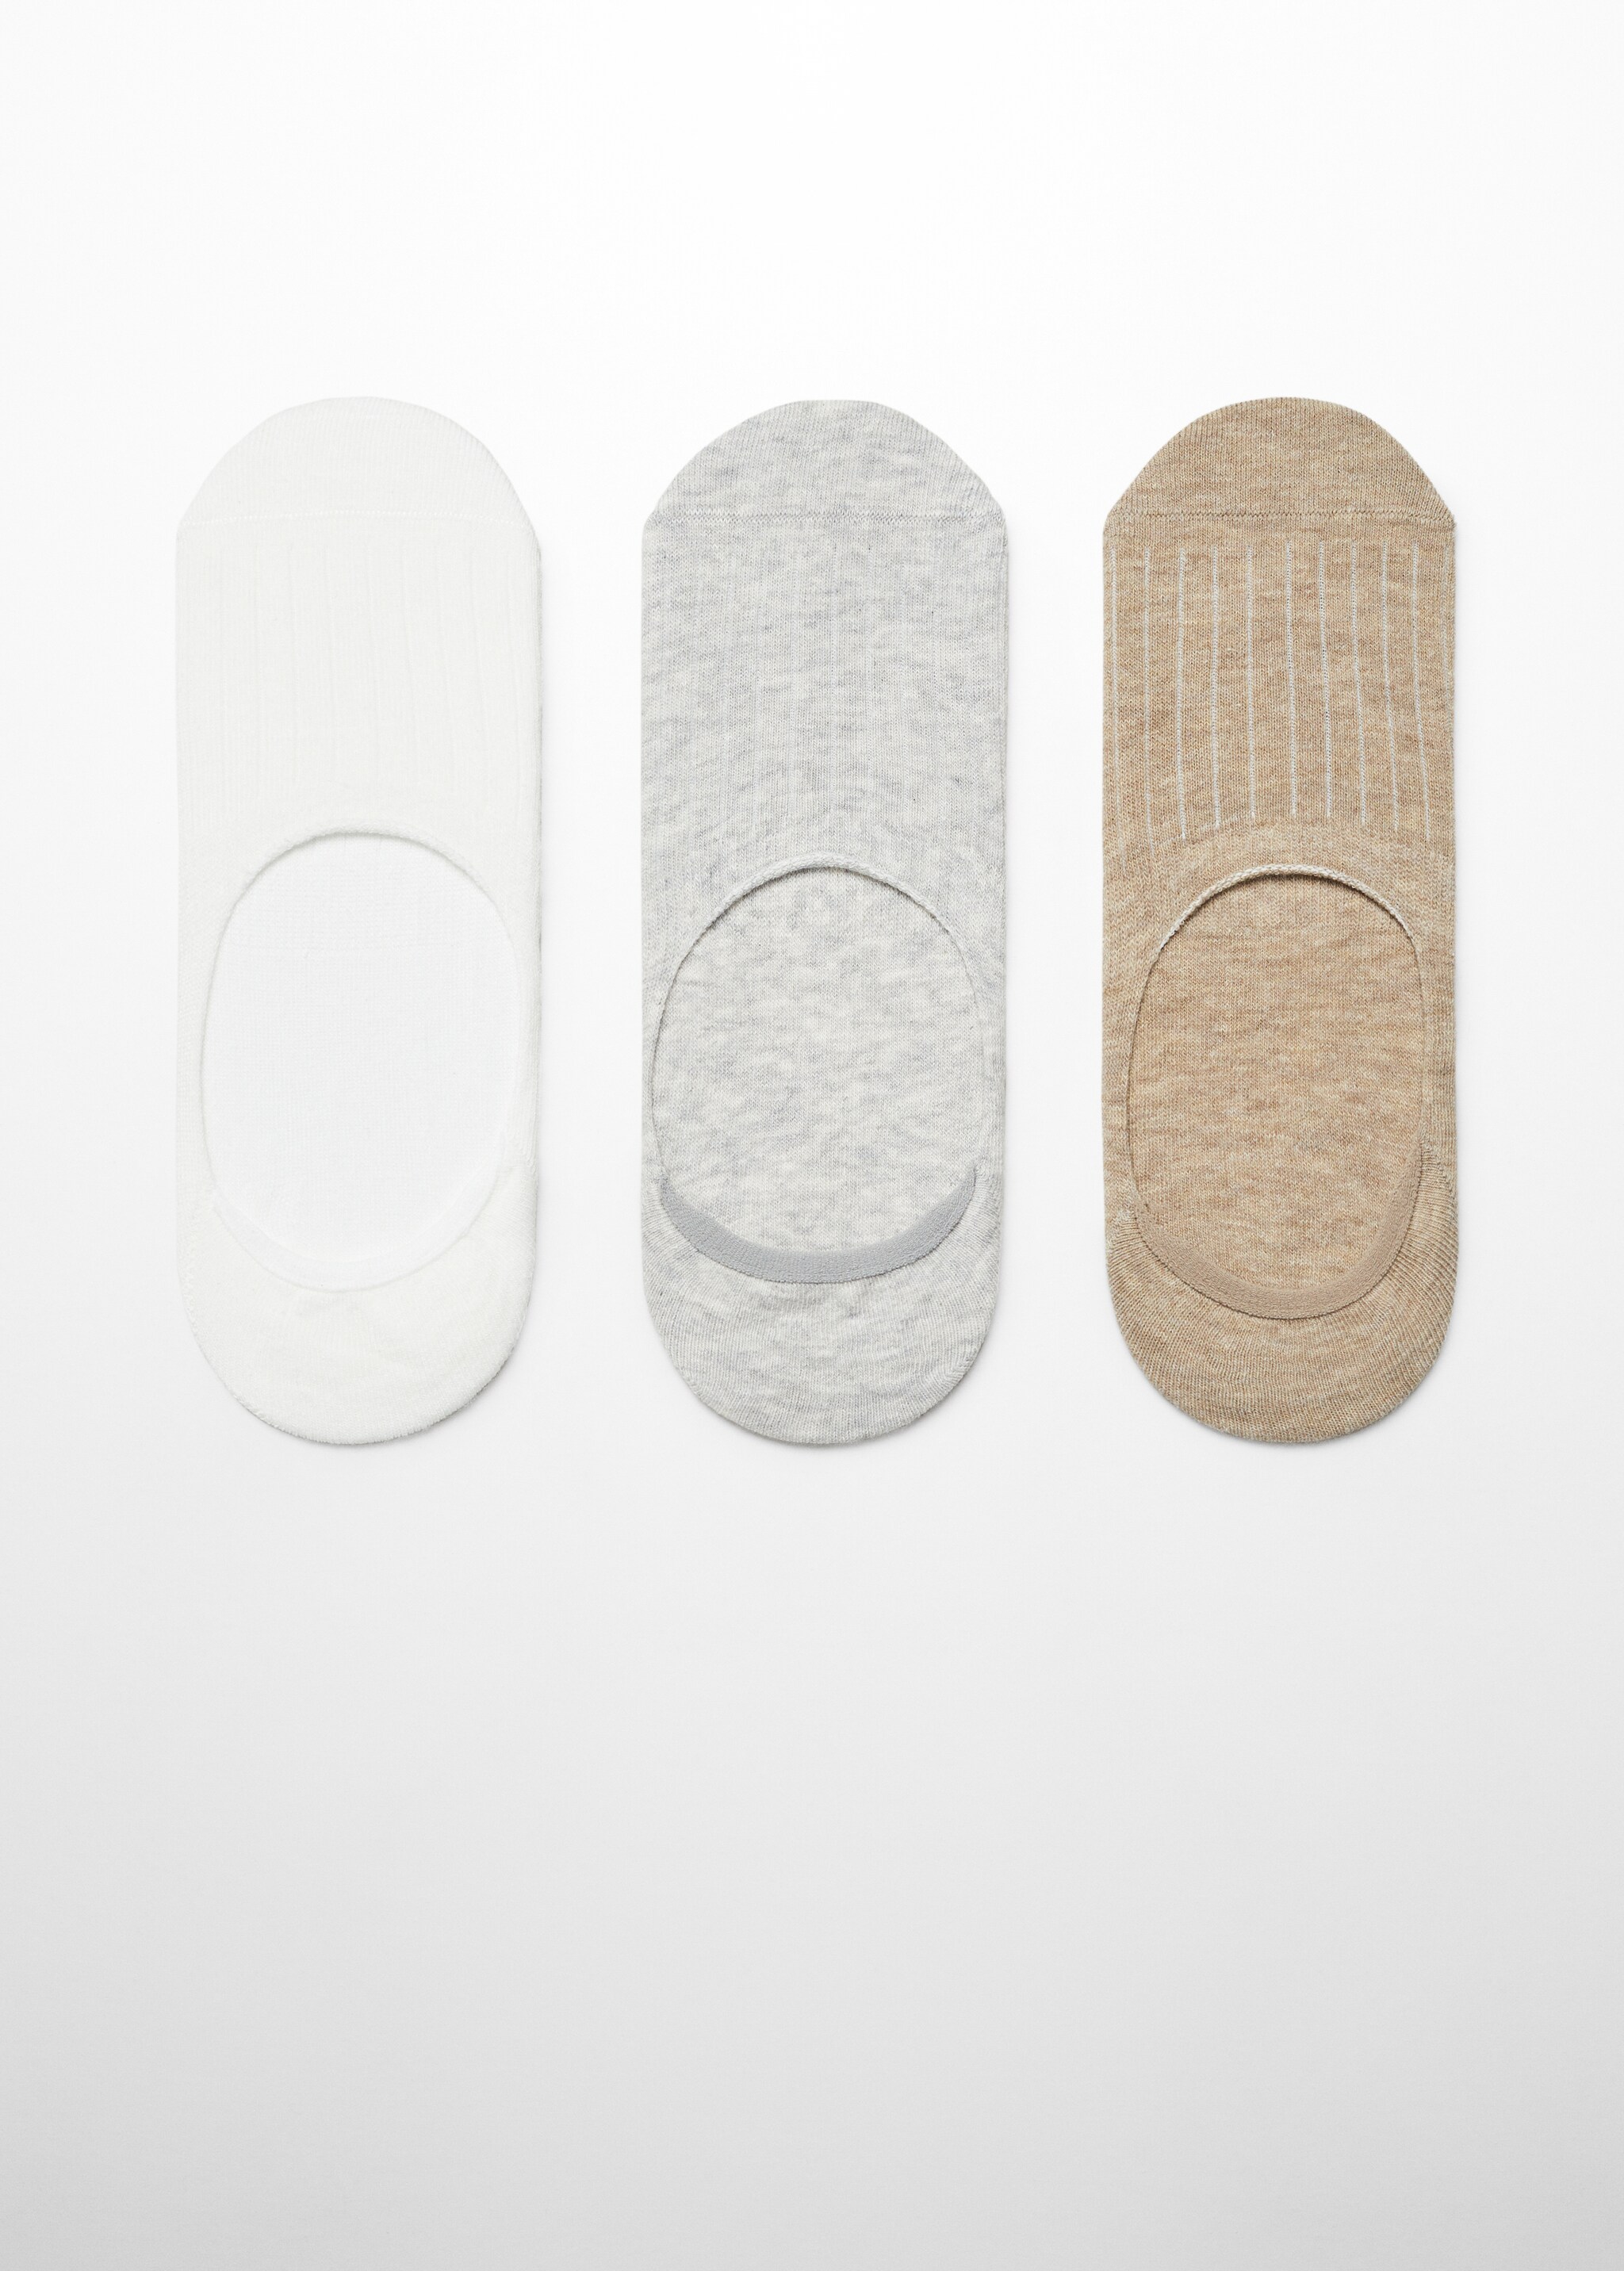 Pack 3 calzini cotone coste - Articolo senza modello